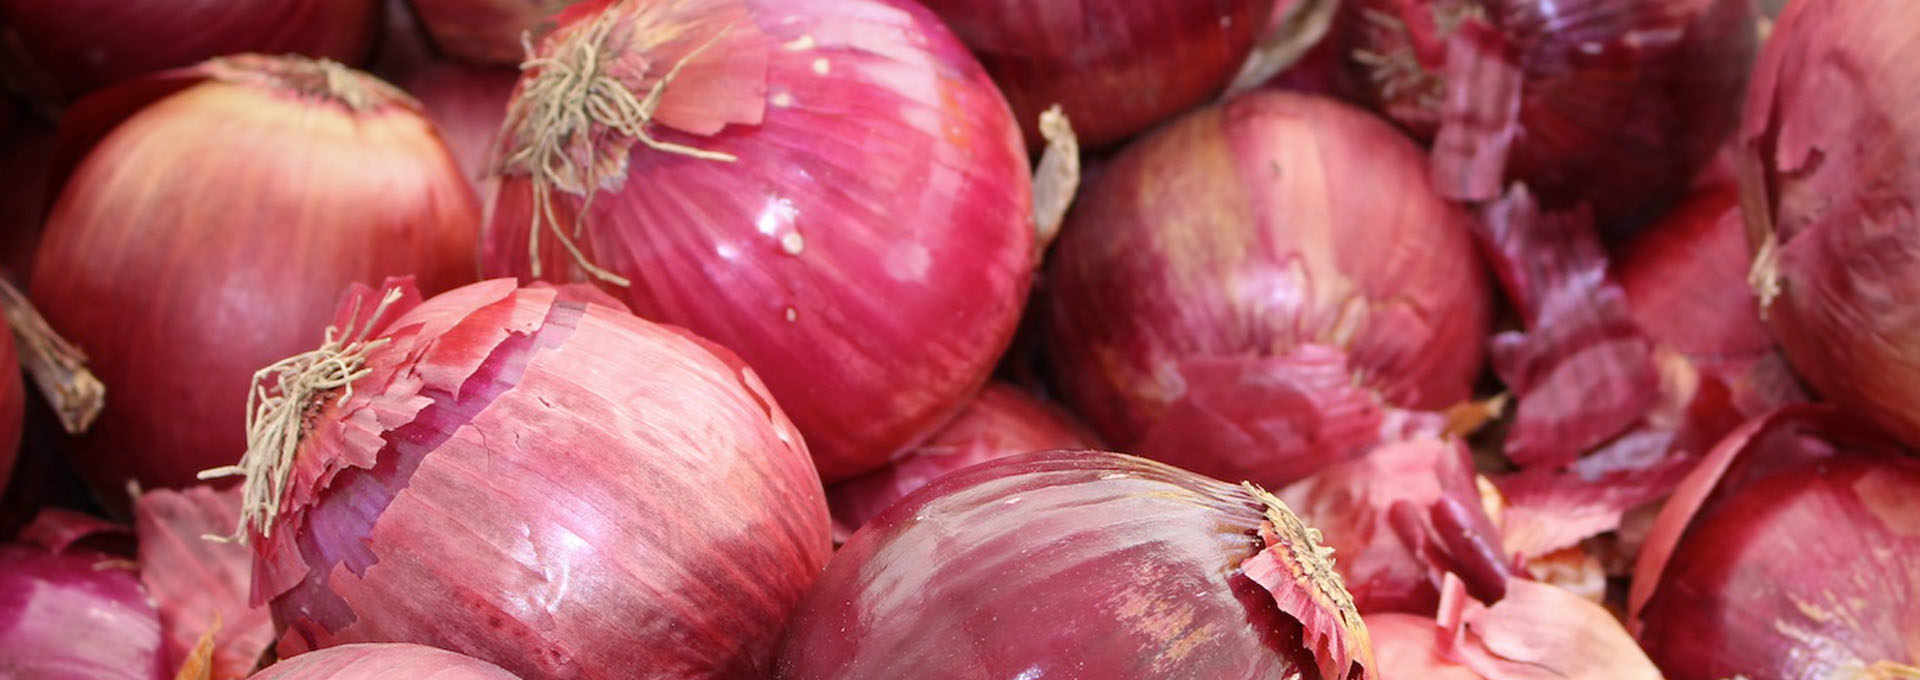 The Novel Onions of Certaldo, Tuscany